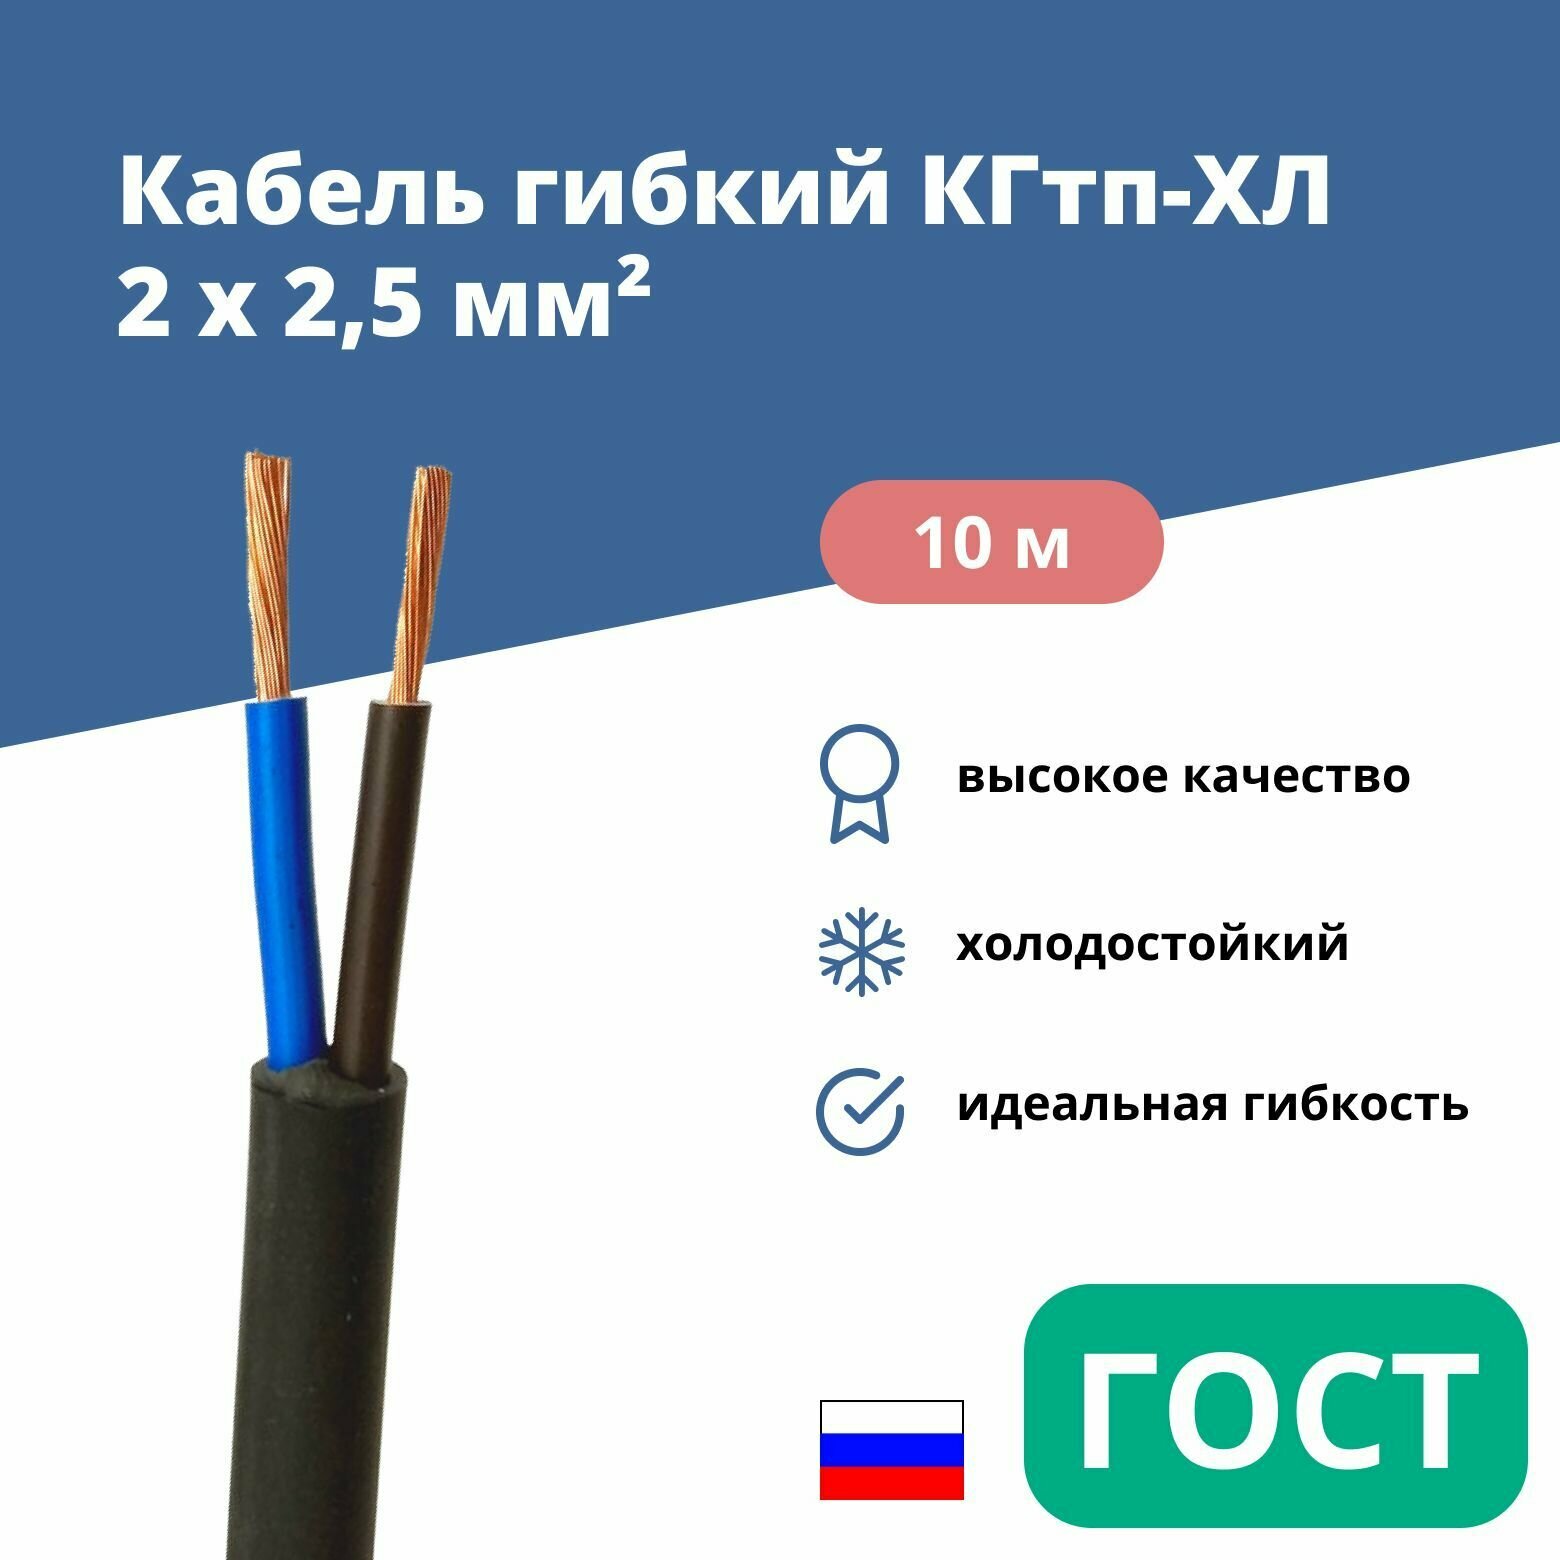 Силовой сварочный кабель гибкий кгтп-хл 2х2,5 уп. 10м.